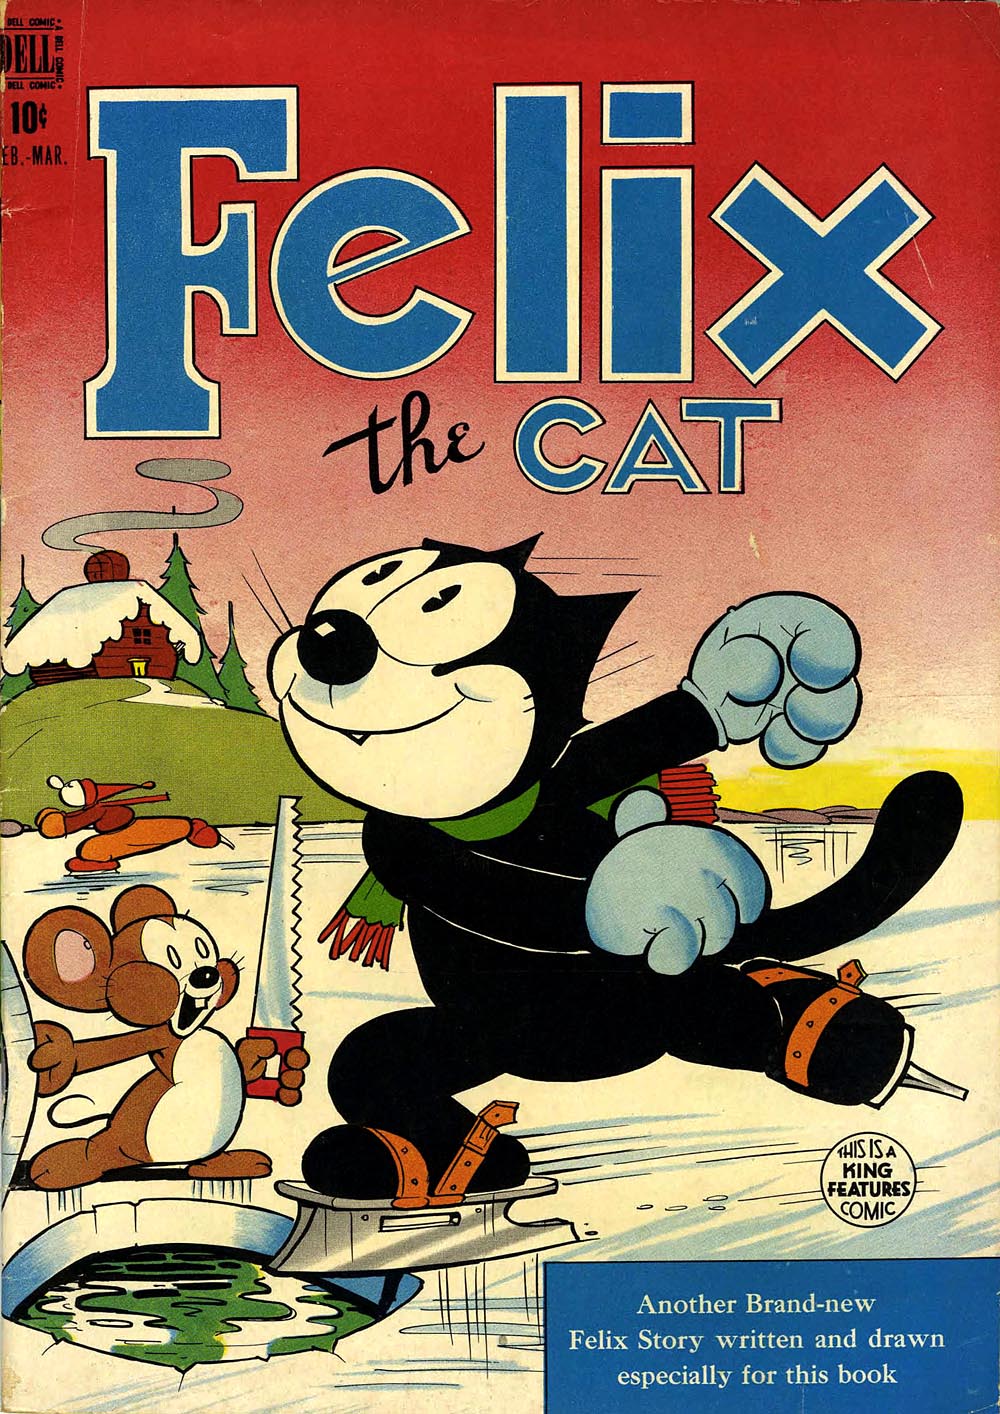 Felix The Cat Comic Book Cover Felix The Cats Vintage Cartoon Comic